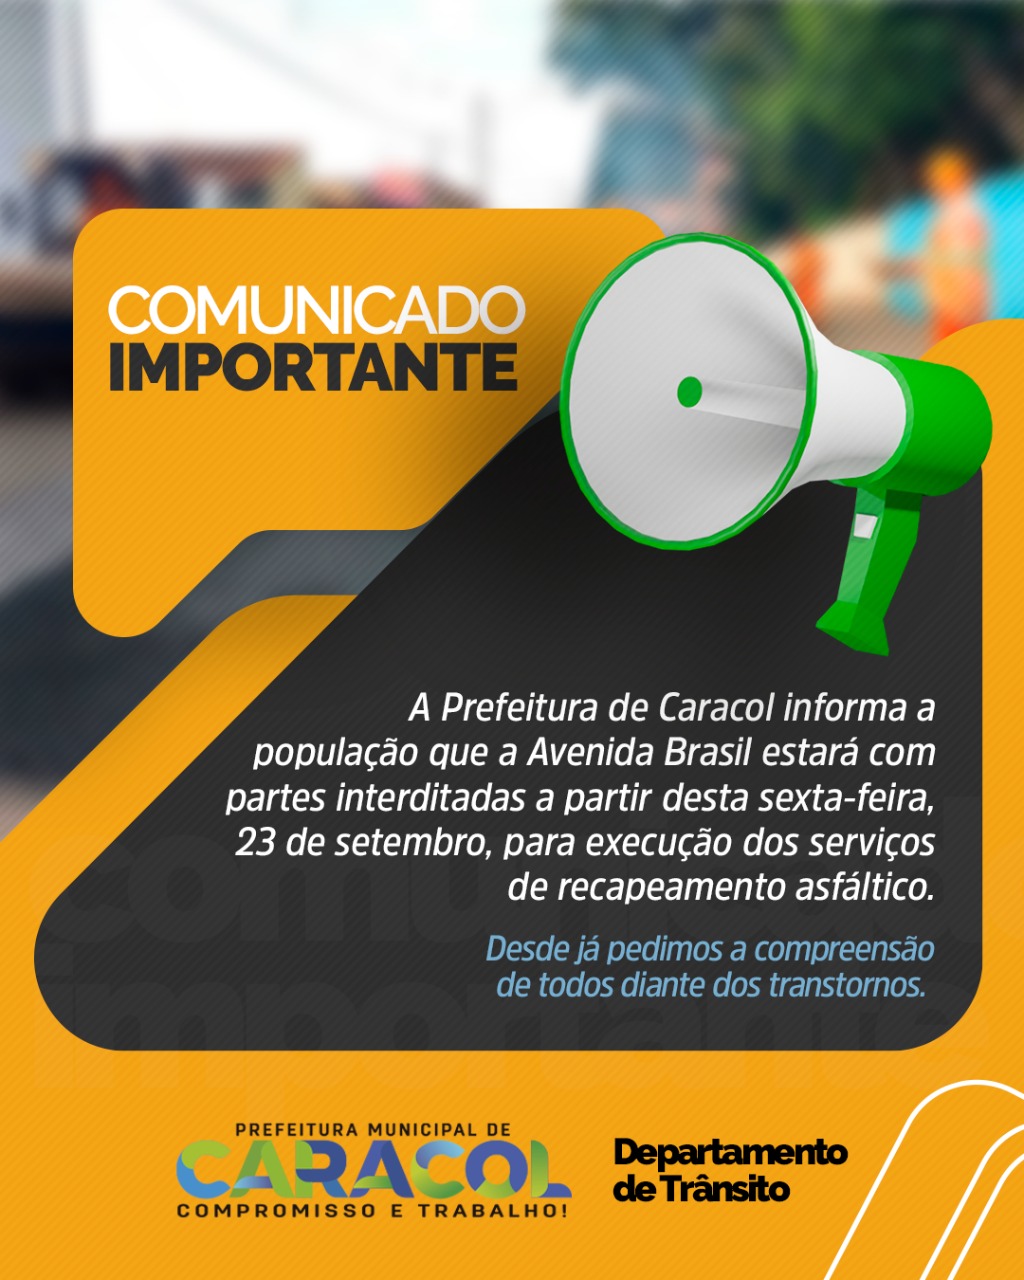 Prefeitura de Caracol informa população sobre interdição da Avenida Brasil